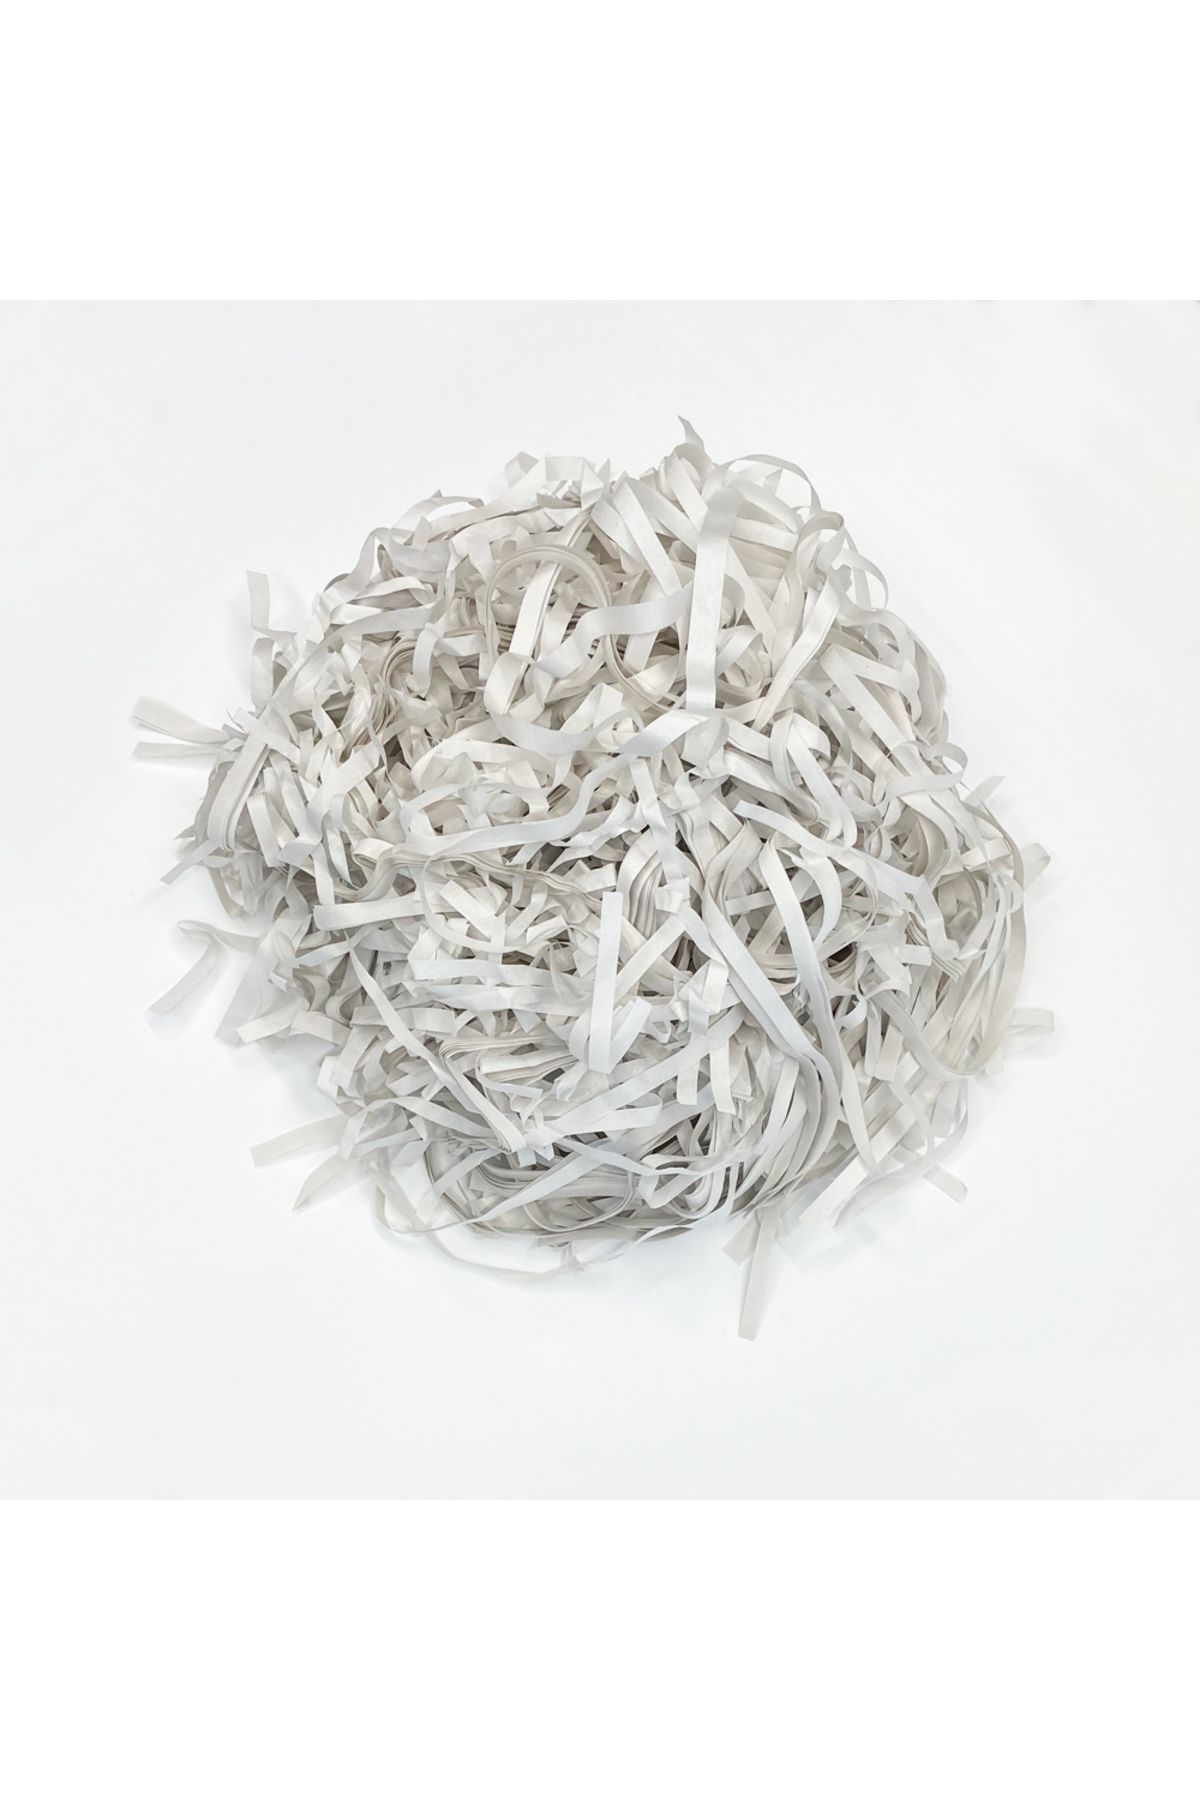 Milim Matbaa 500 gr Beyaz Kırpık Kağıt